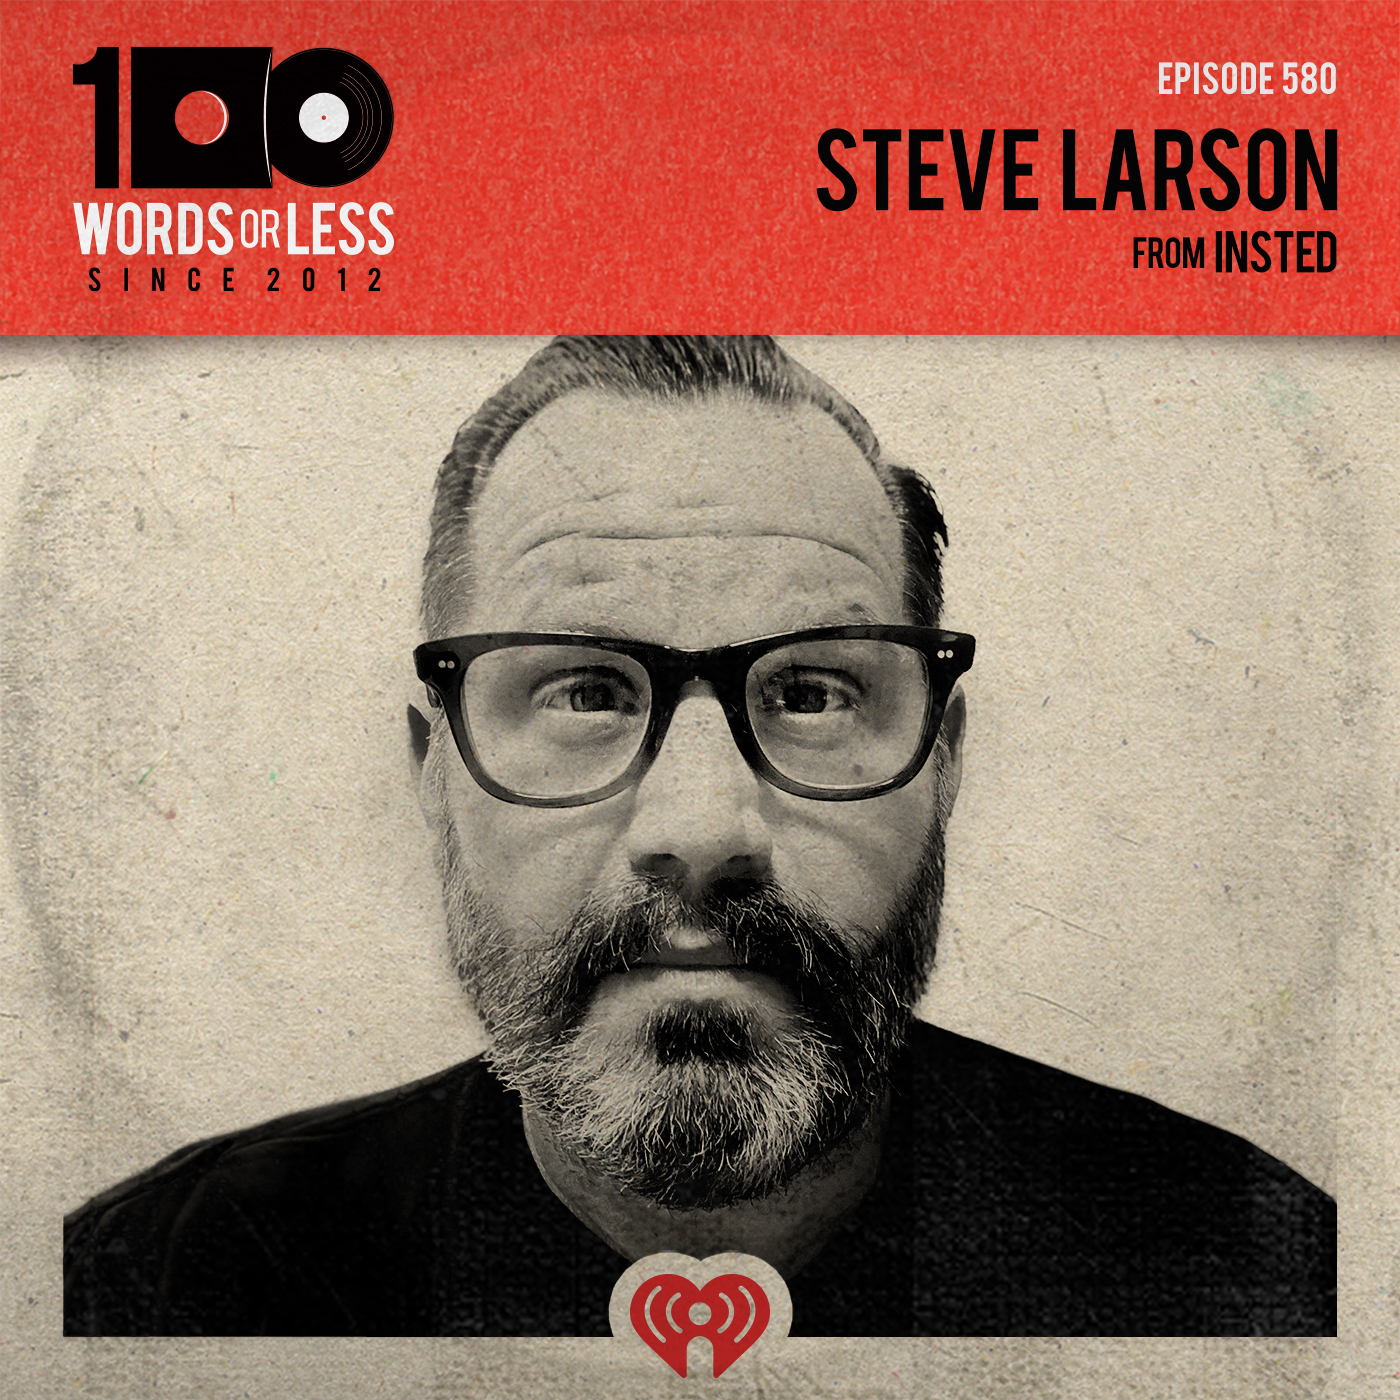 Steve Larson from Insted